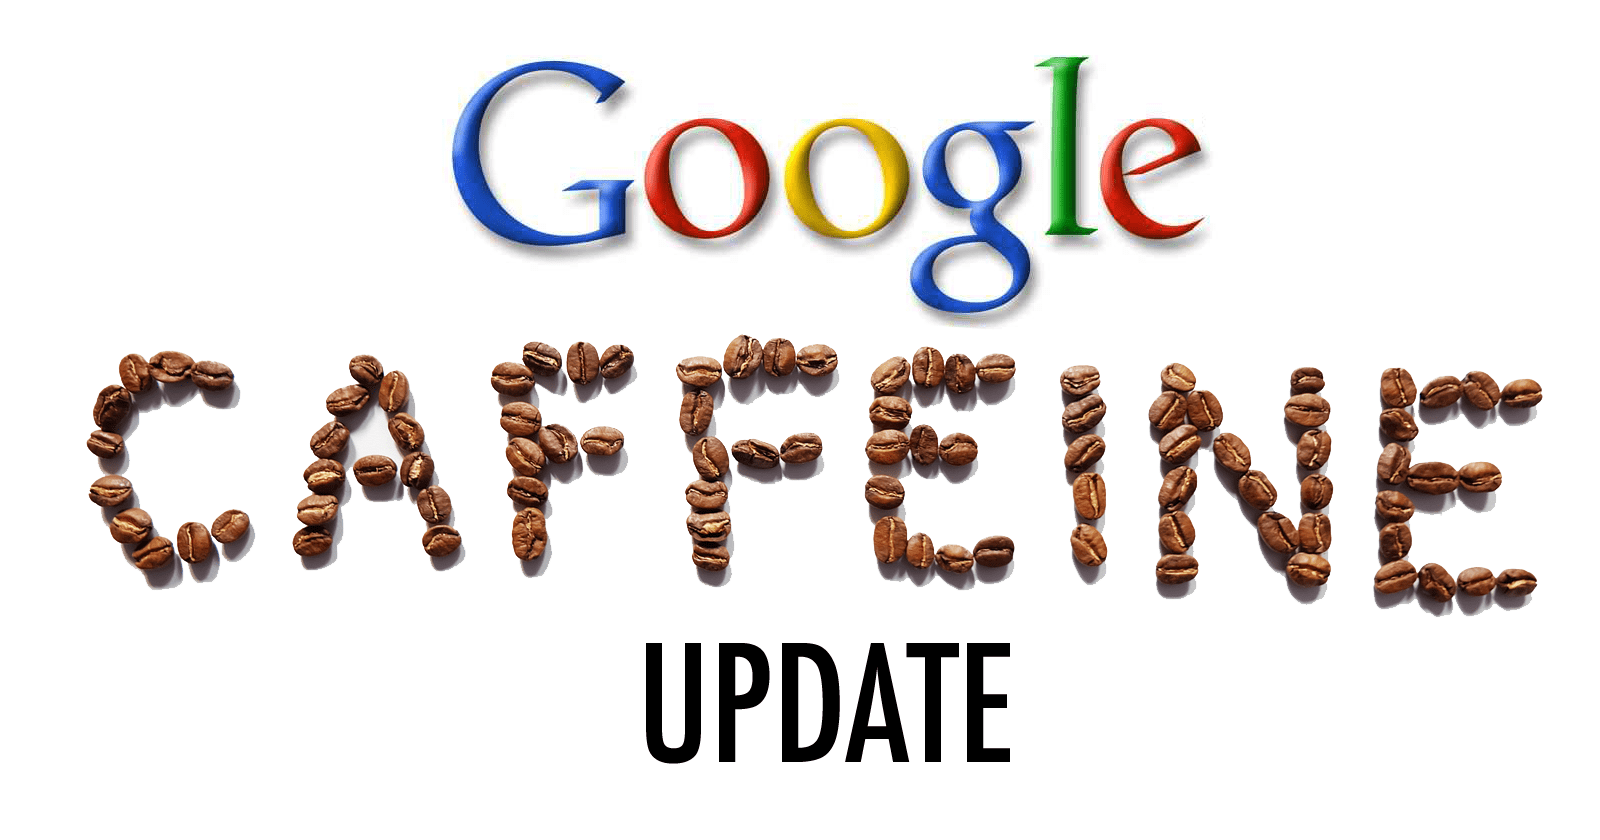 Google Caffeine Update